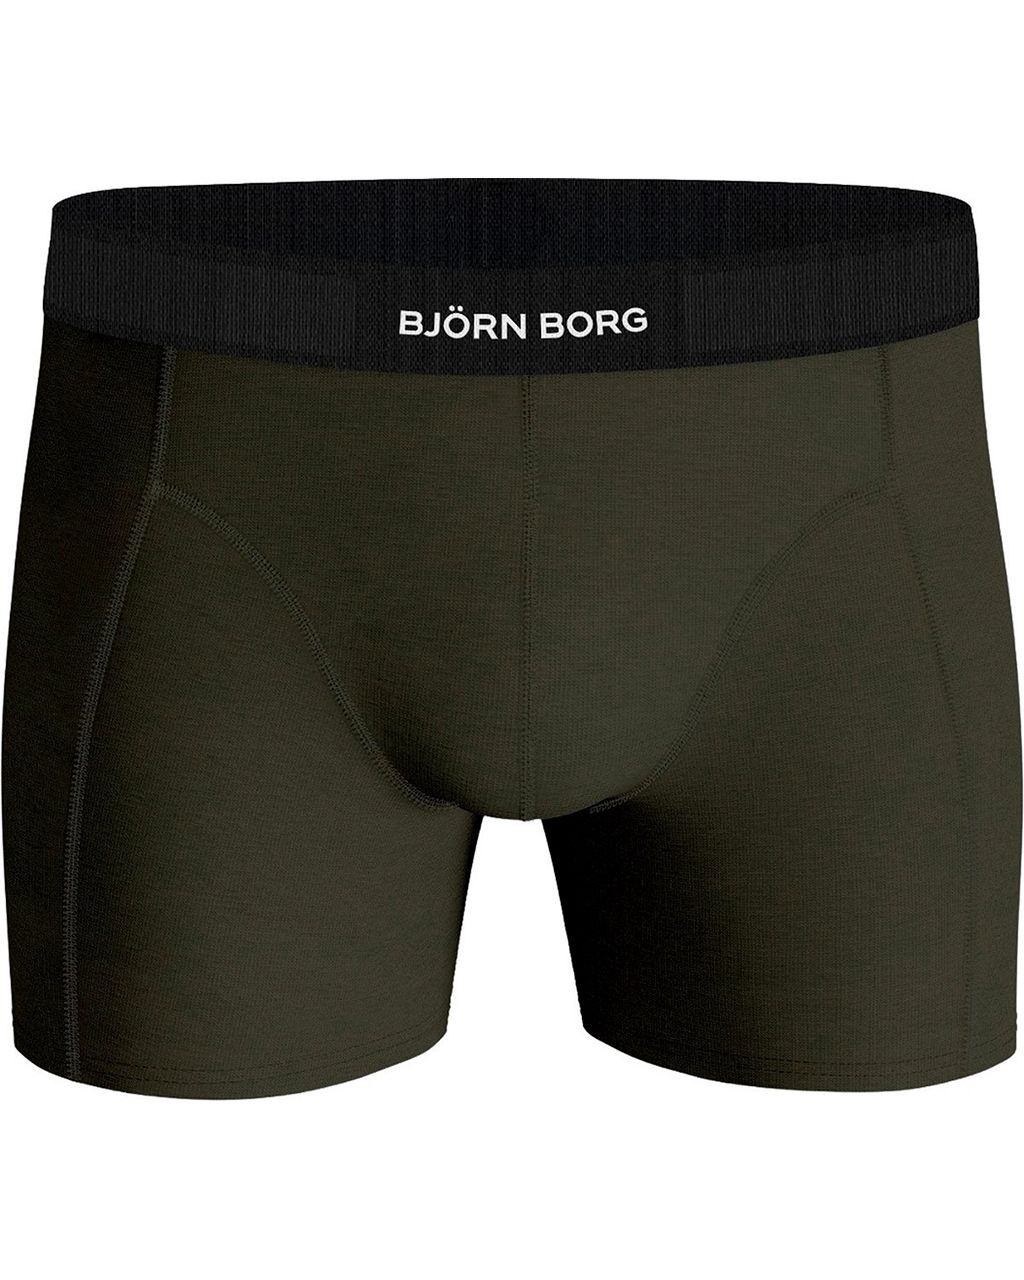 Björn Borg Boxershort Donker groen 080049-001-L